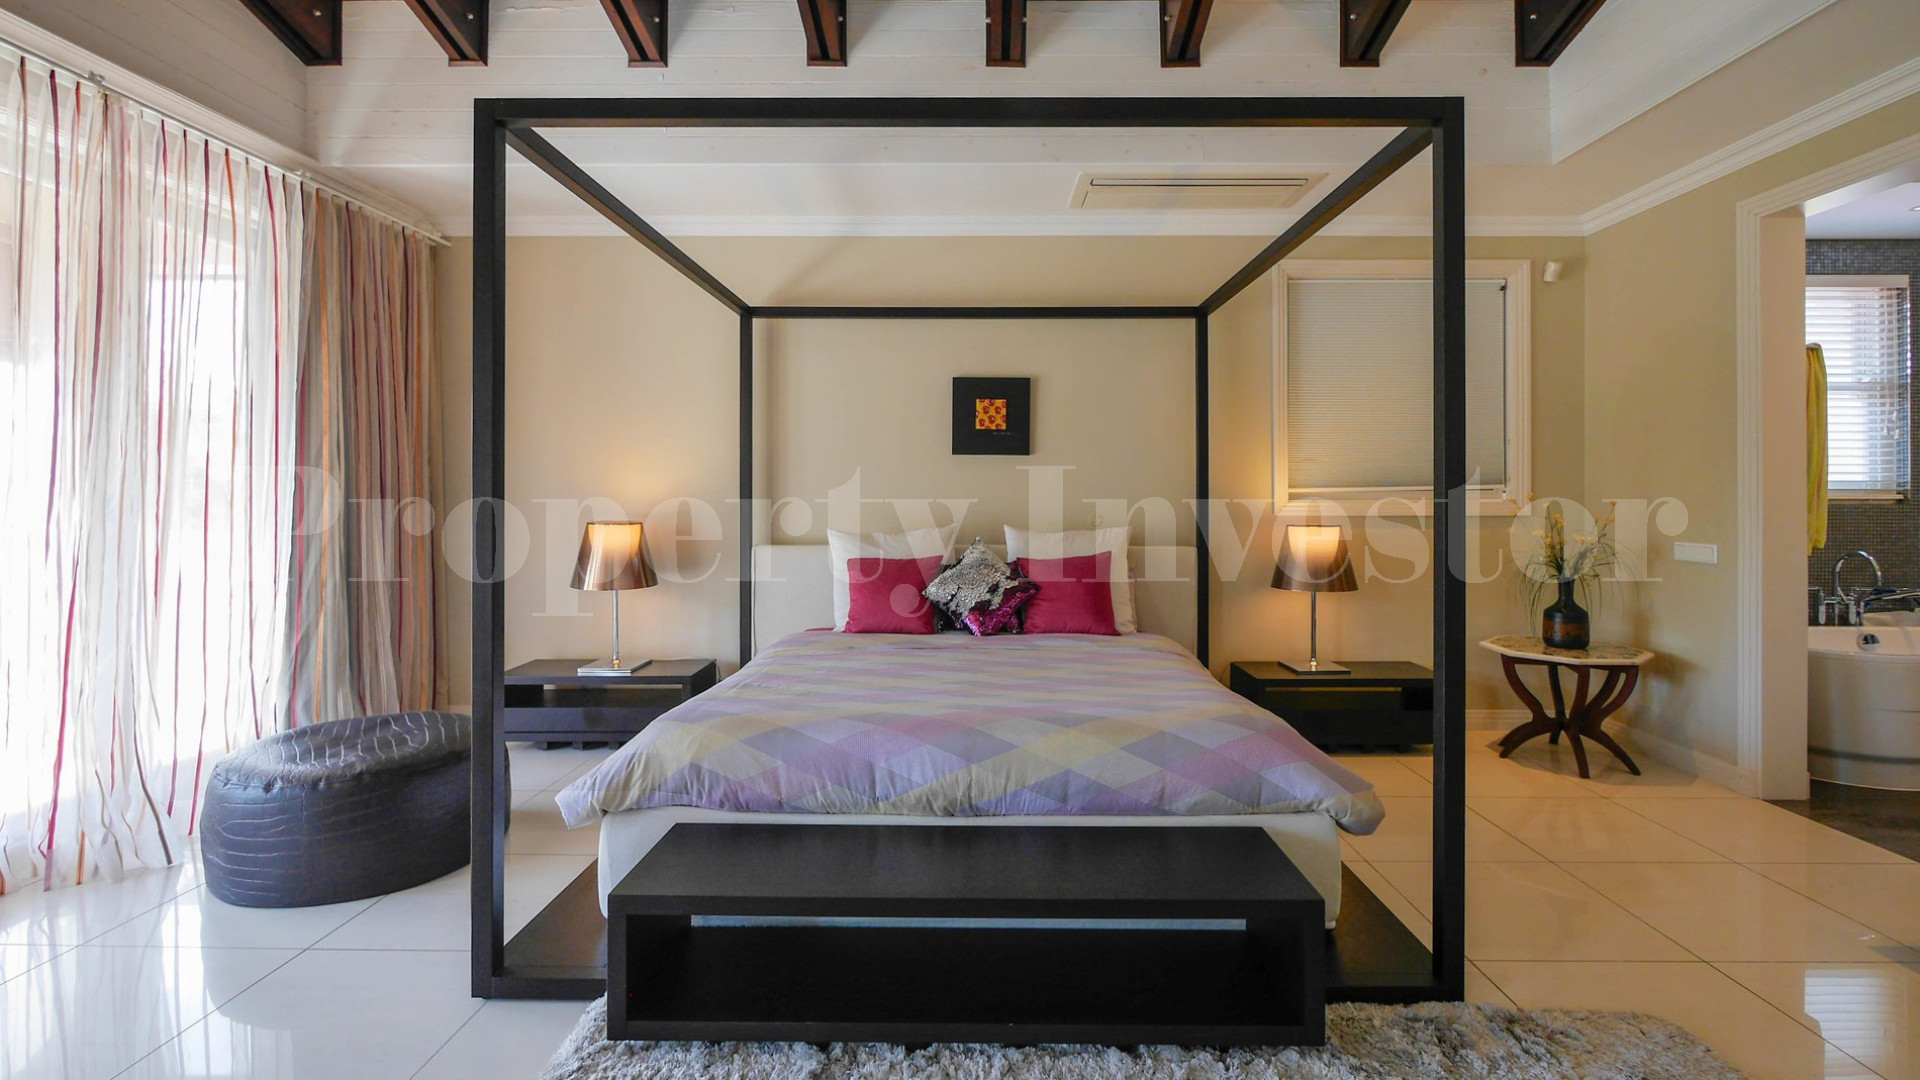 Современная роскошная частная дизайнерская вилла на 5 спален на берегу океана на о.Иден, Сейшелы